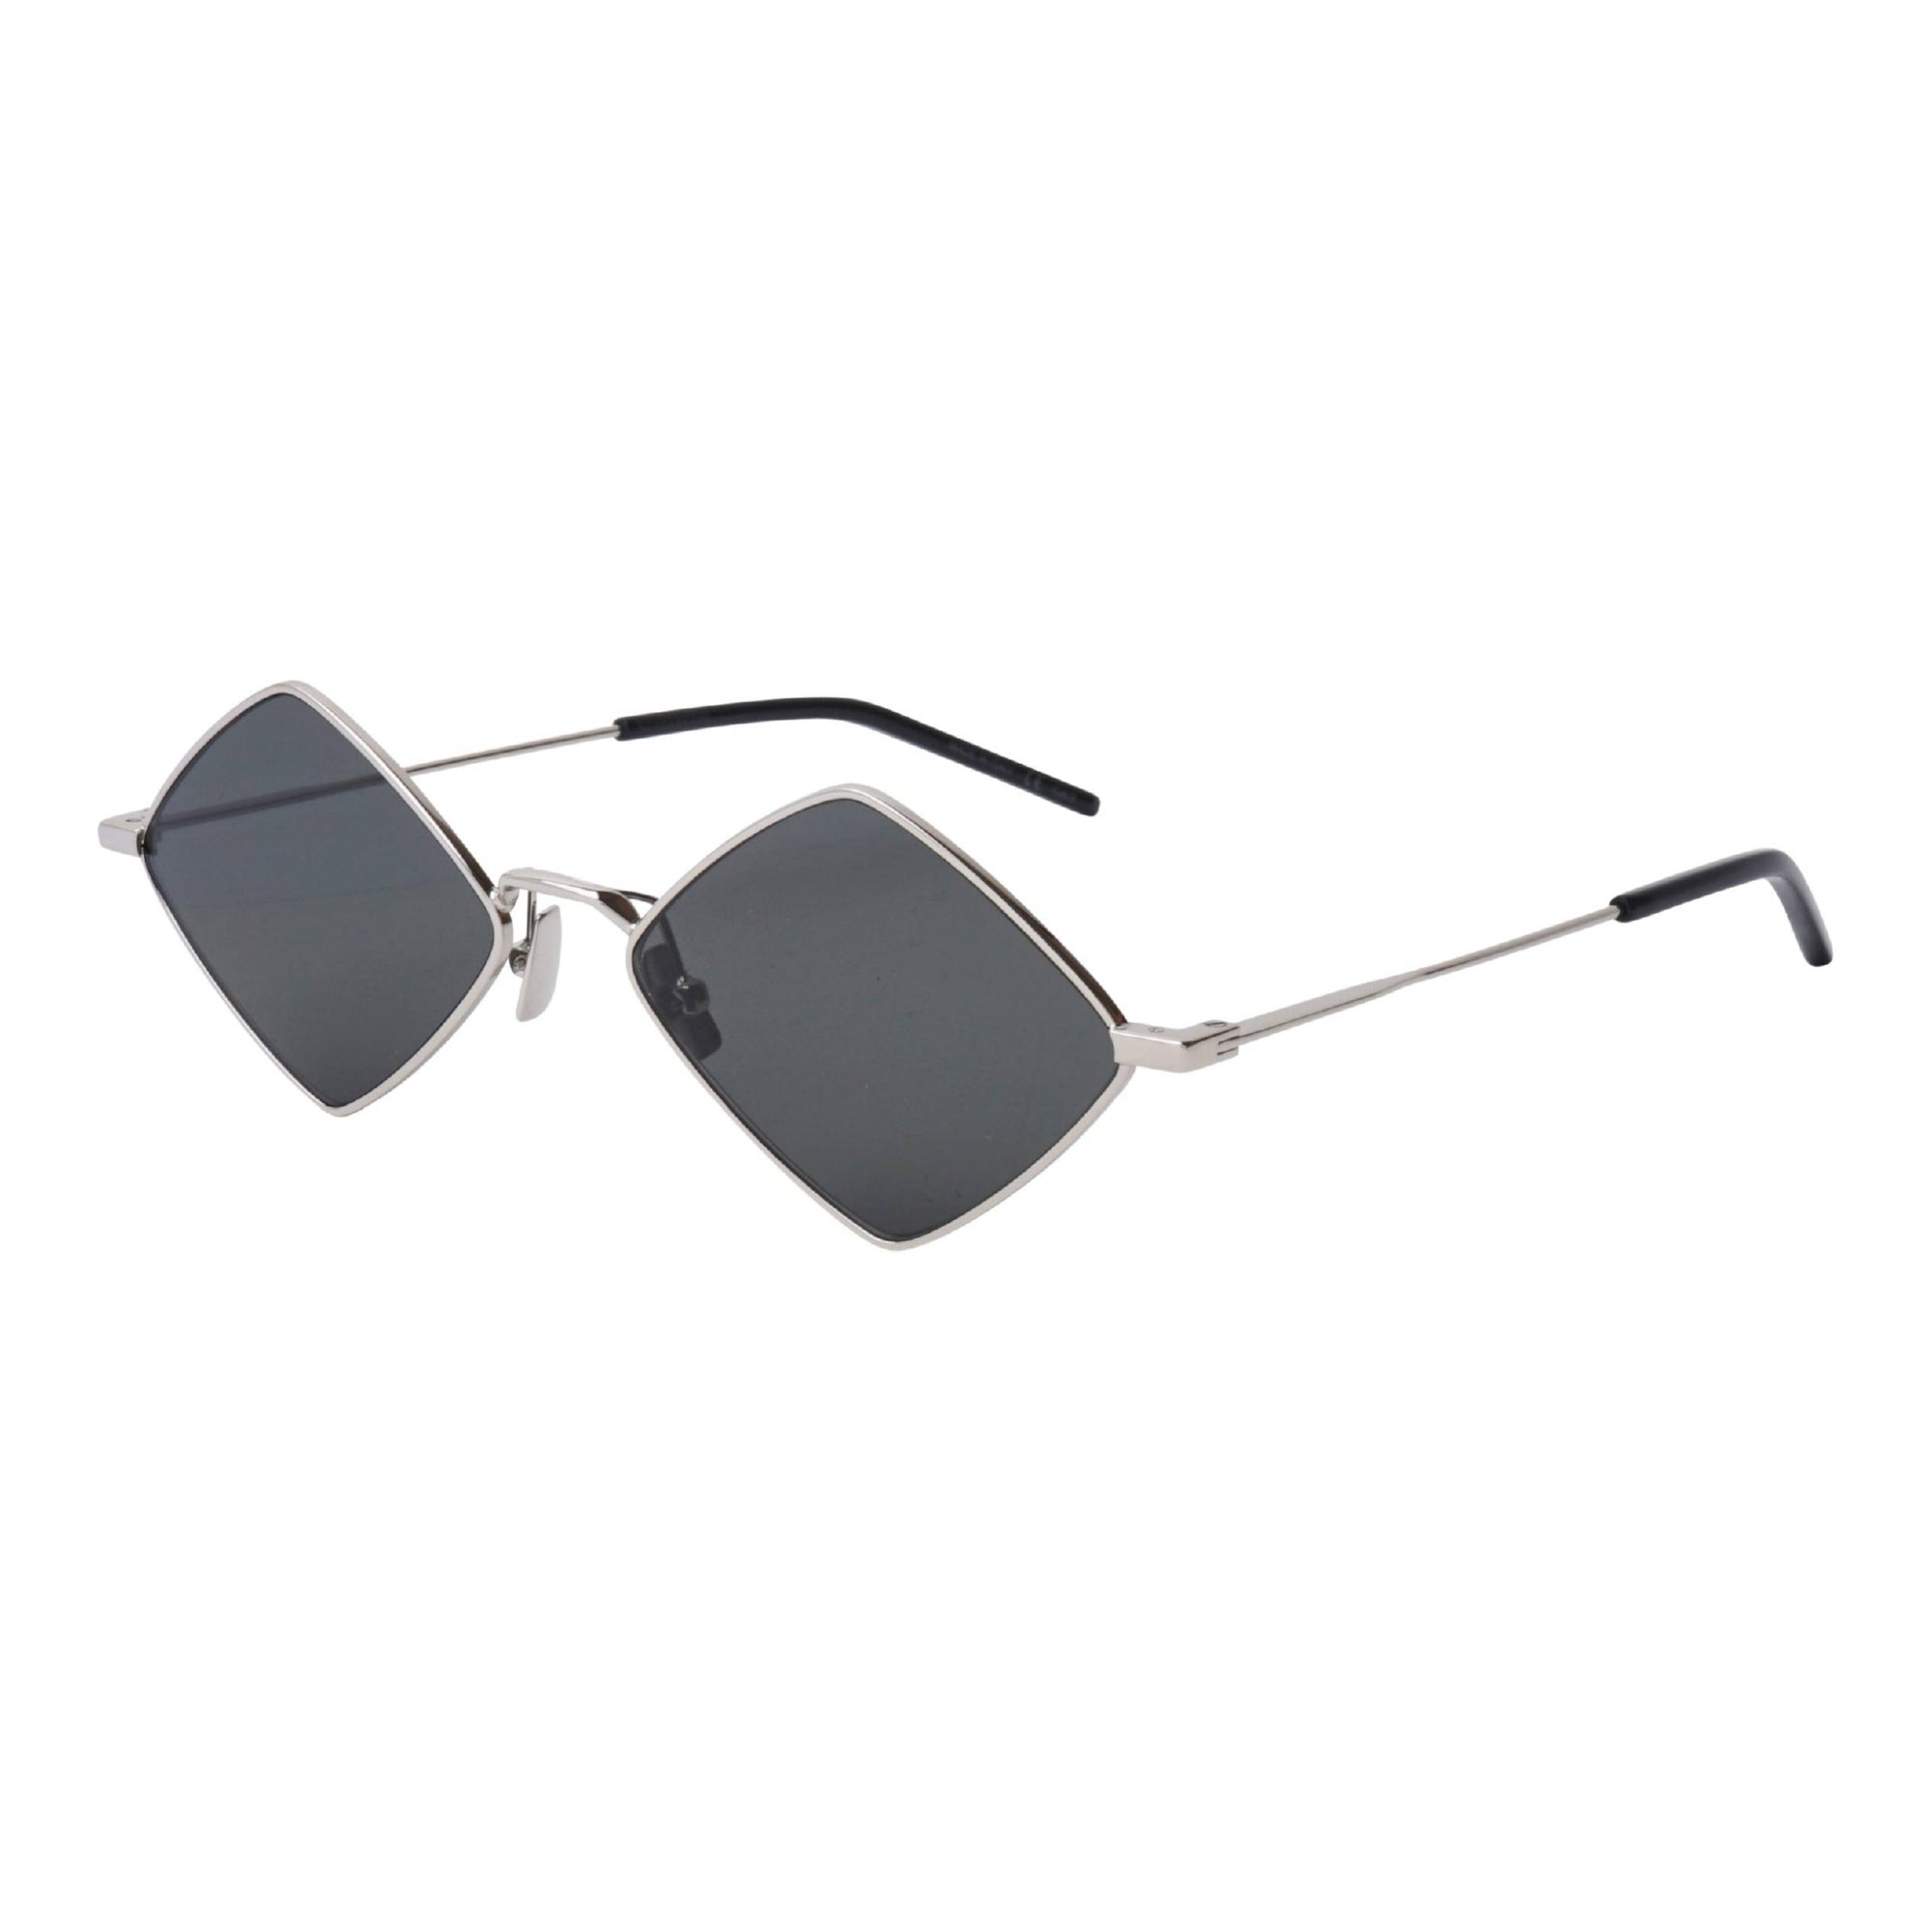 Saint Laurent M115 Sunglasses in Gray | Lyst